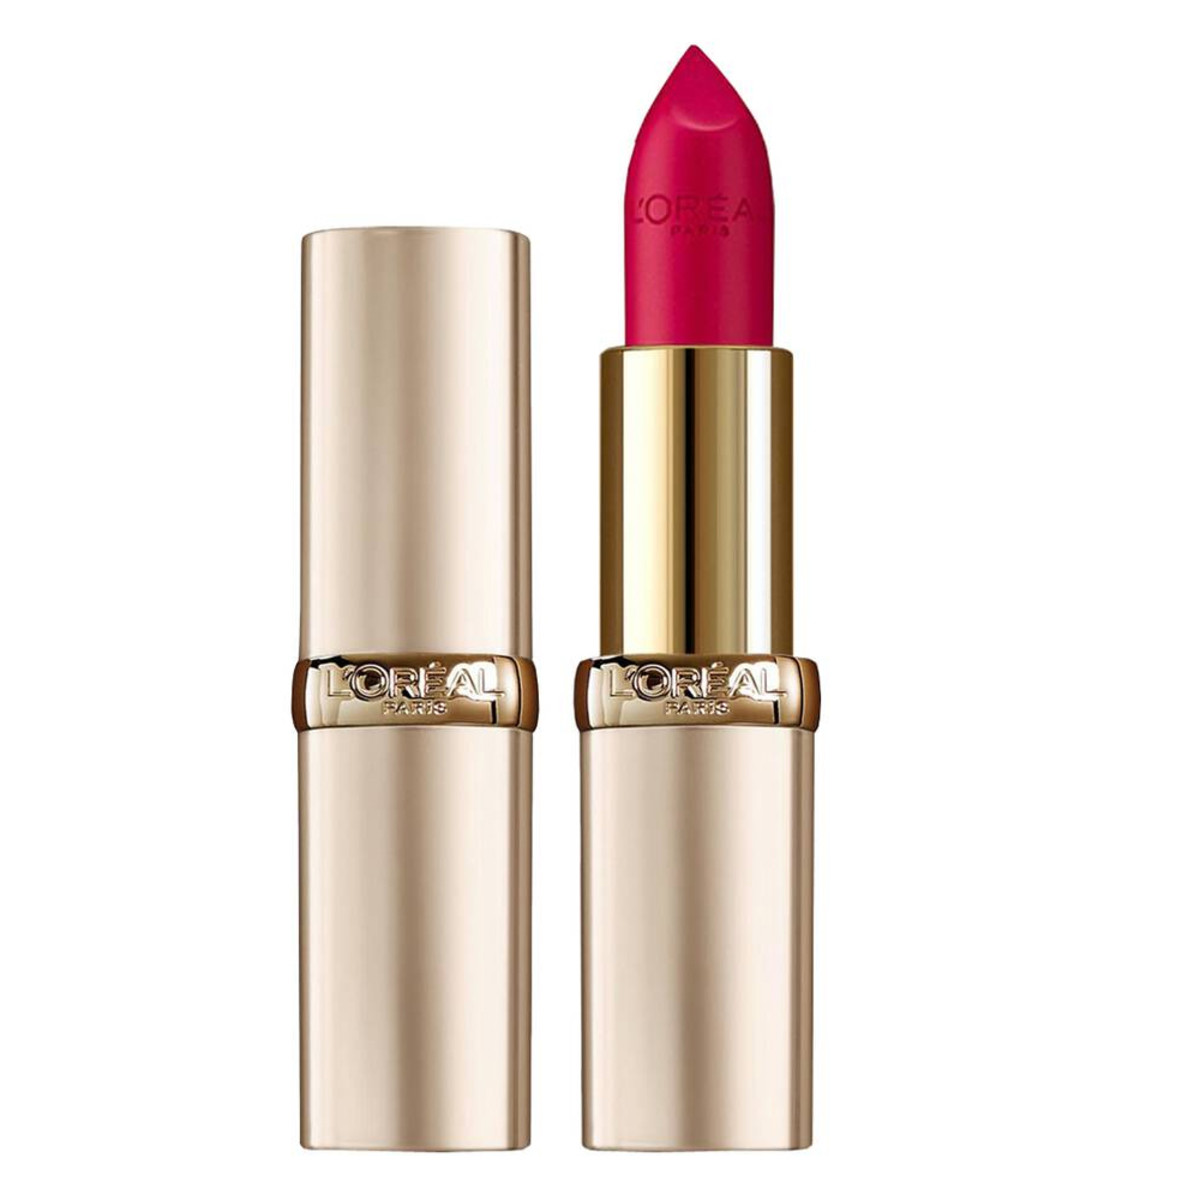 L'Oreal Paris Color Riche Lipstick in Intense Fuchsia ($12 $3.90 CAD at lorealbeautyoutlet.ca*)